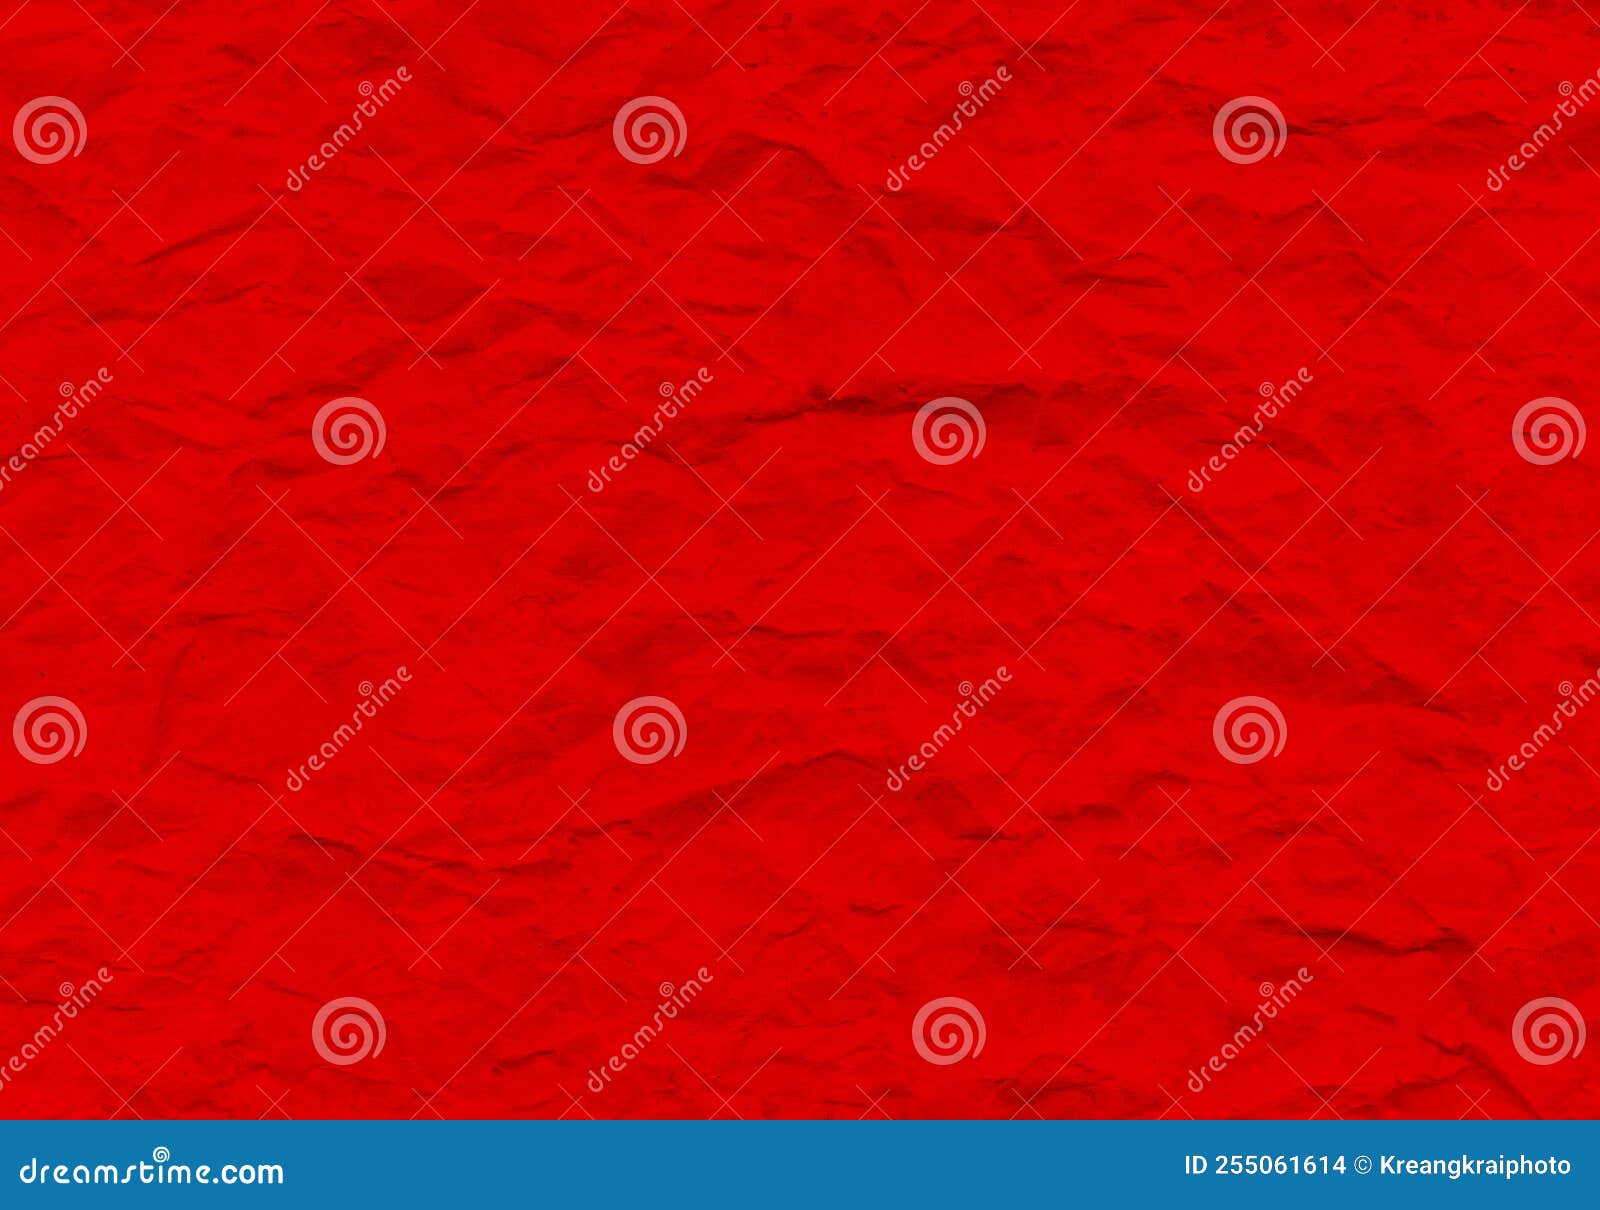 红 中国红 壁纸 红色壁纸 - 高清图片，堆糖，美图壁纸兴趣社区